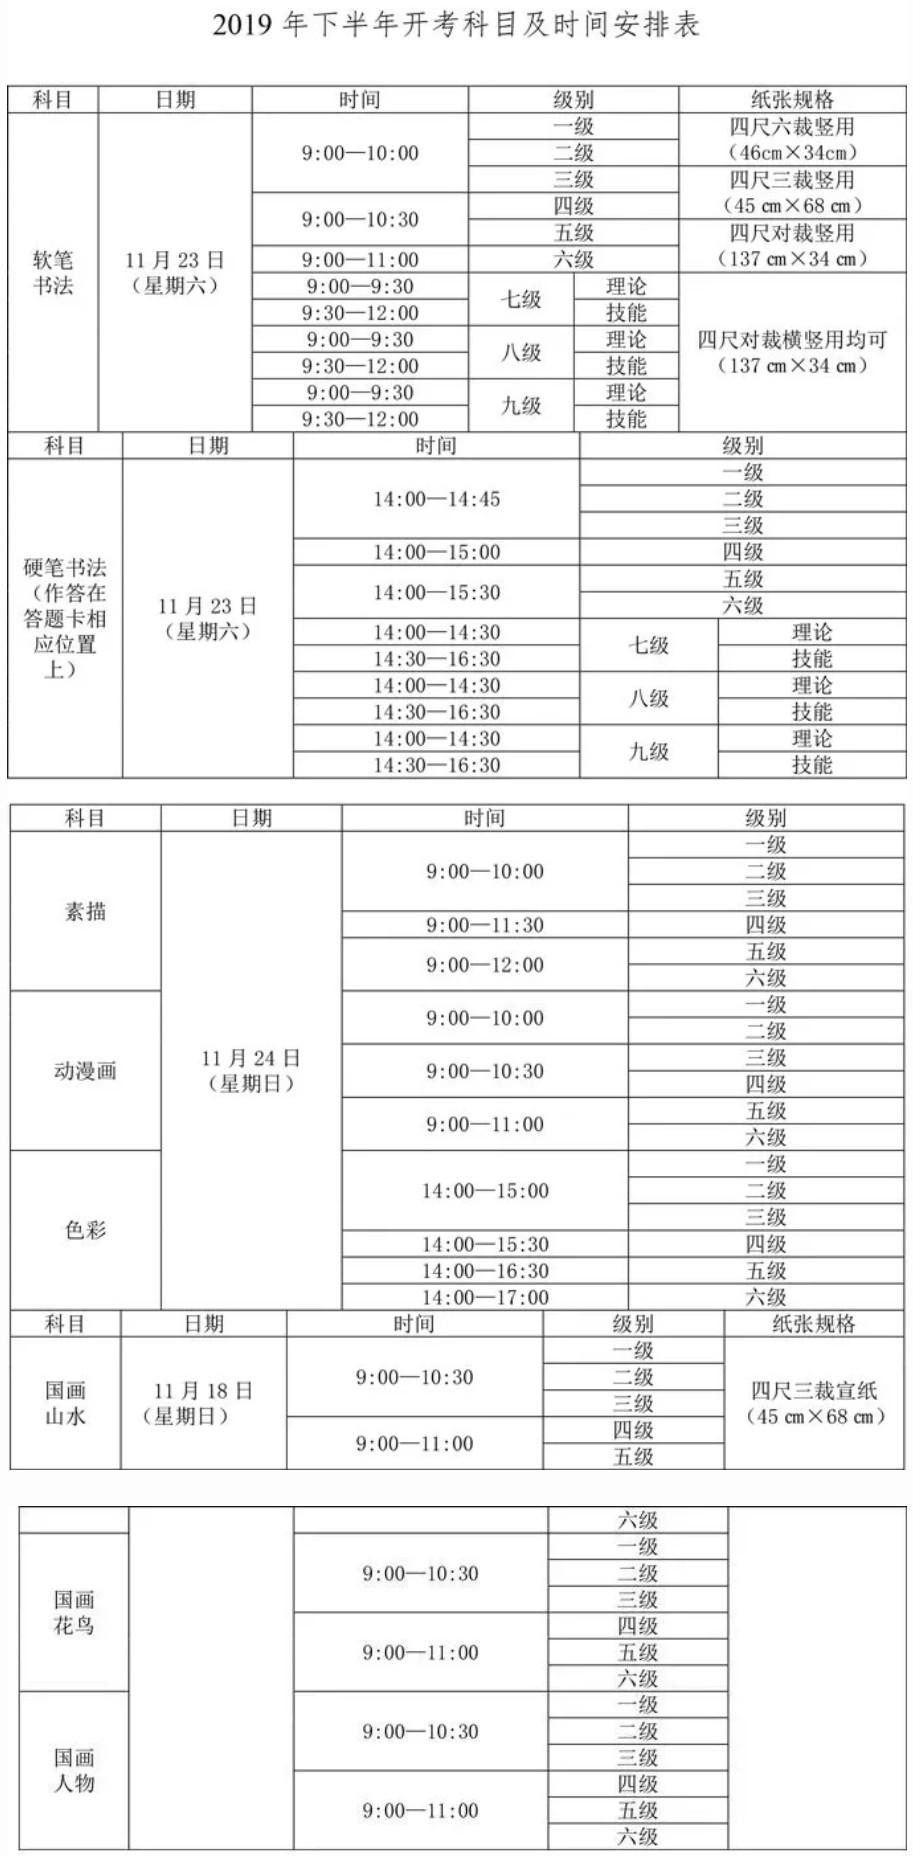 2019四川省下半年书画等级考试报考公告（中国教育考试网）1